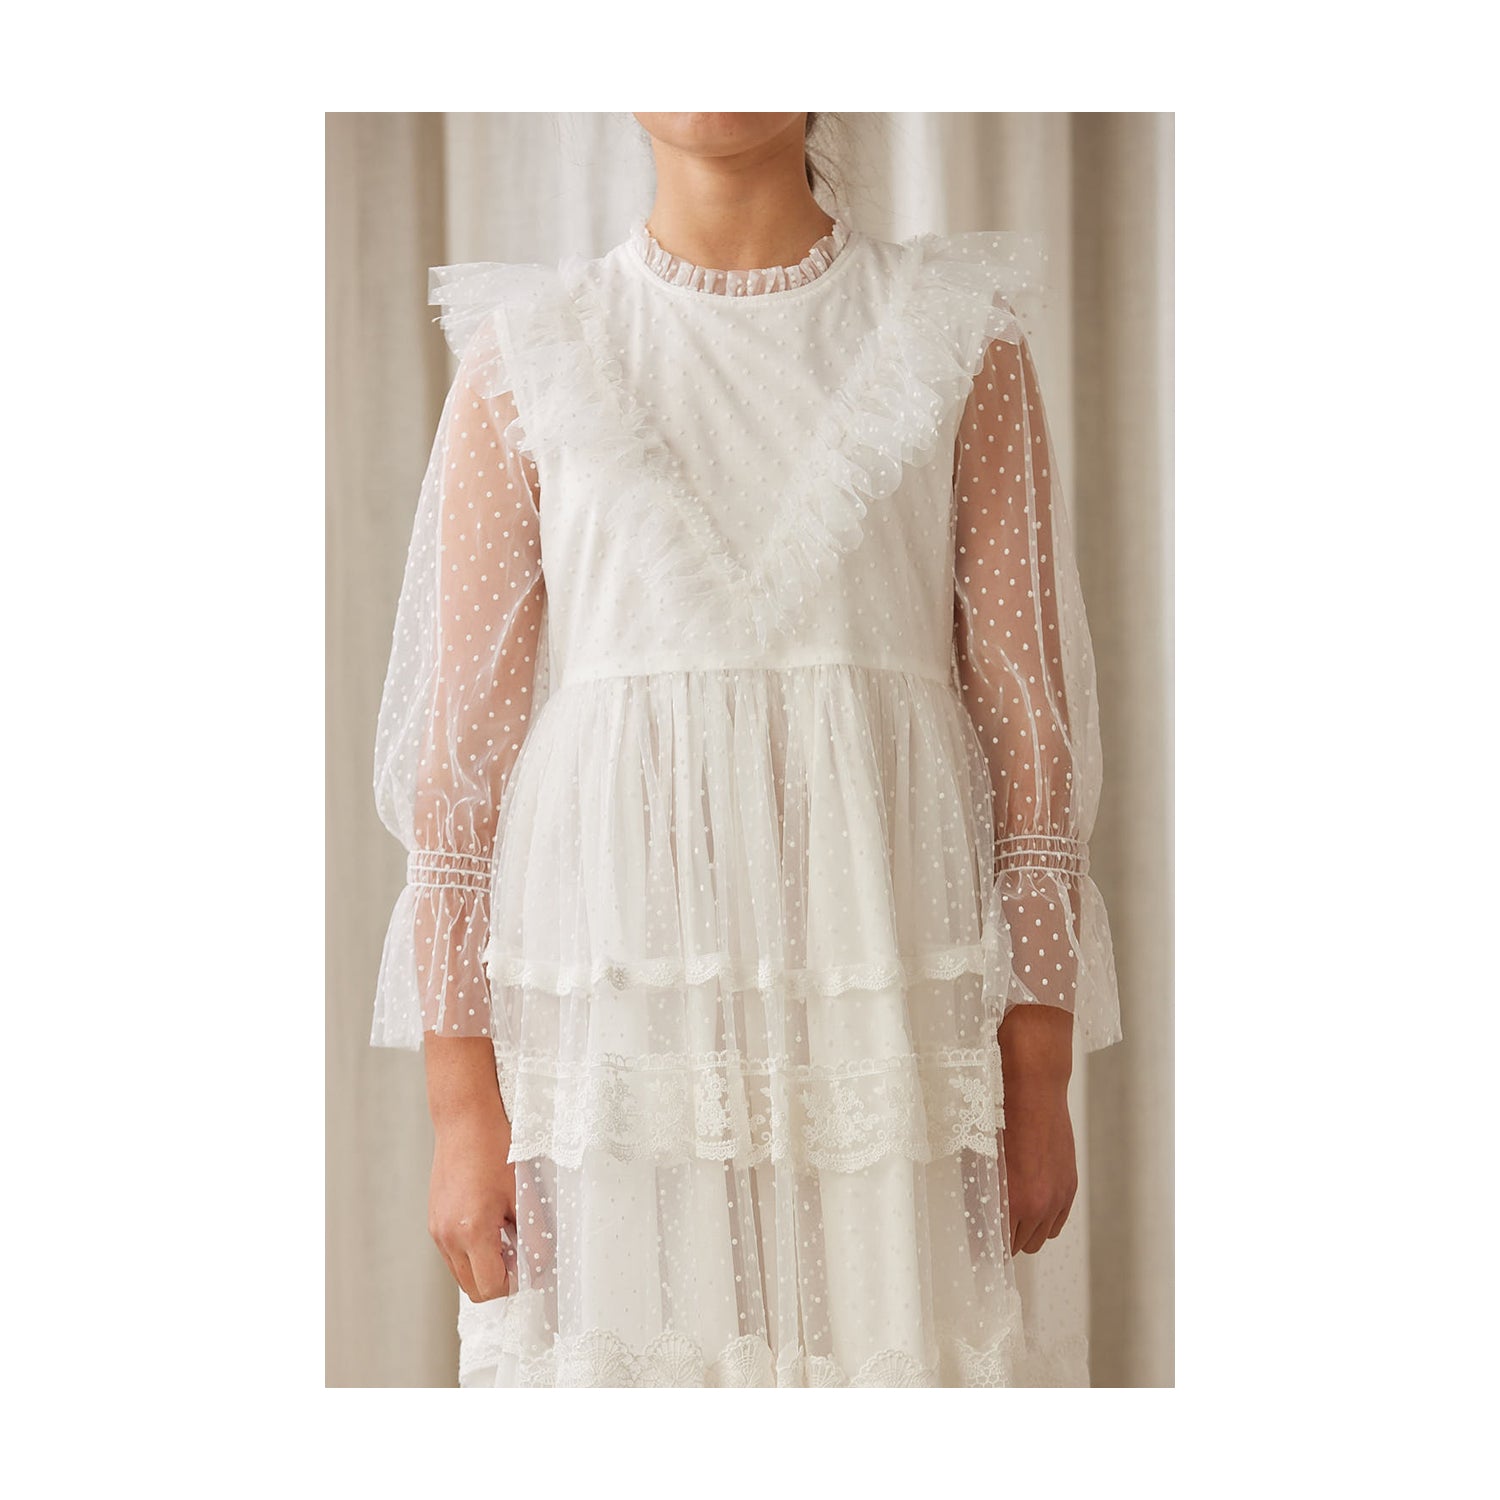 Petite Amalie Eve Tulle Dress - White